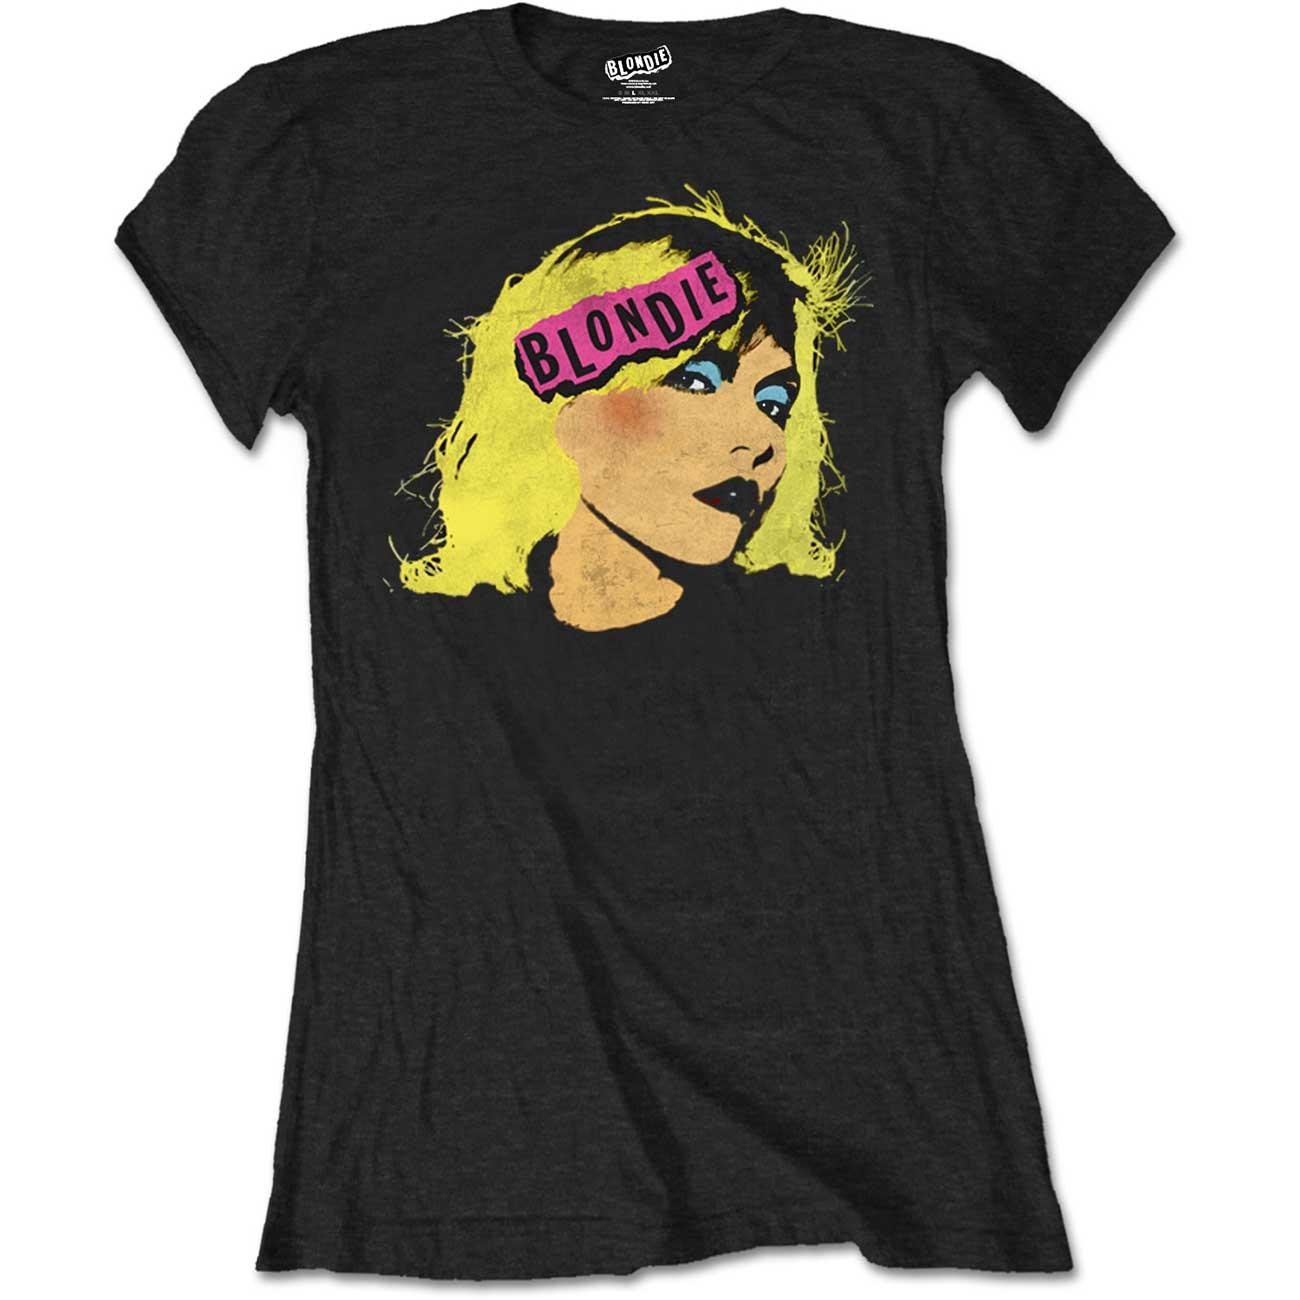 (ブロンディ) Blondie オフィシャル商品 レディース Punk ロゴ Tシャツ 半袖 トップス 【海外通販】